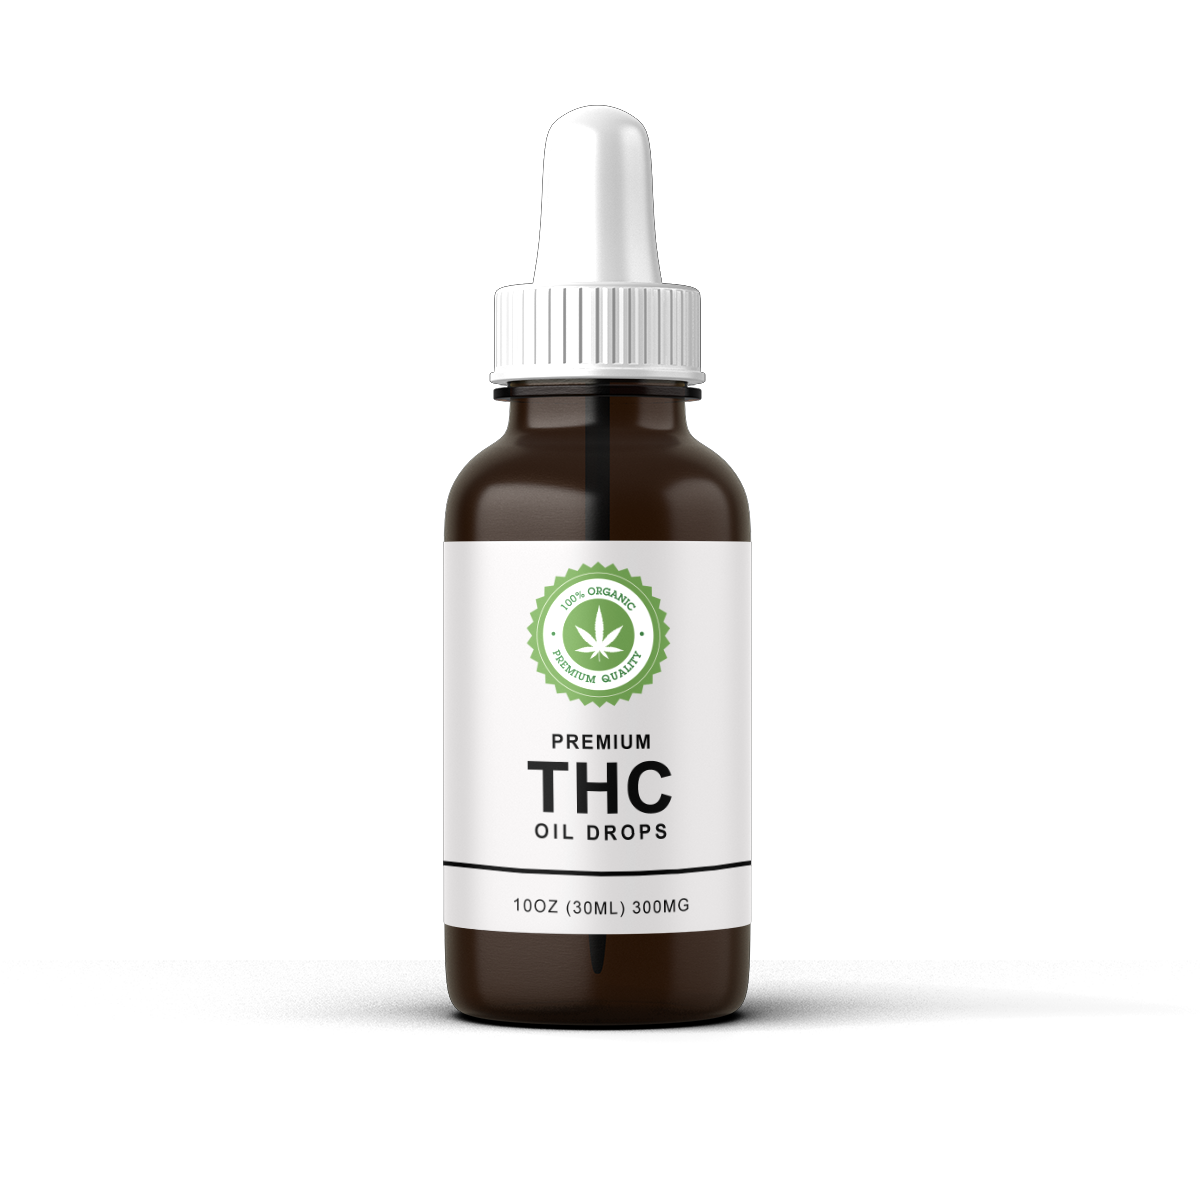 Premium Organic THC Oil Drops